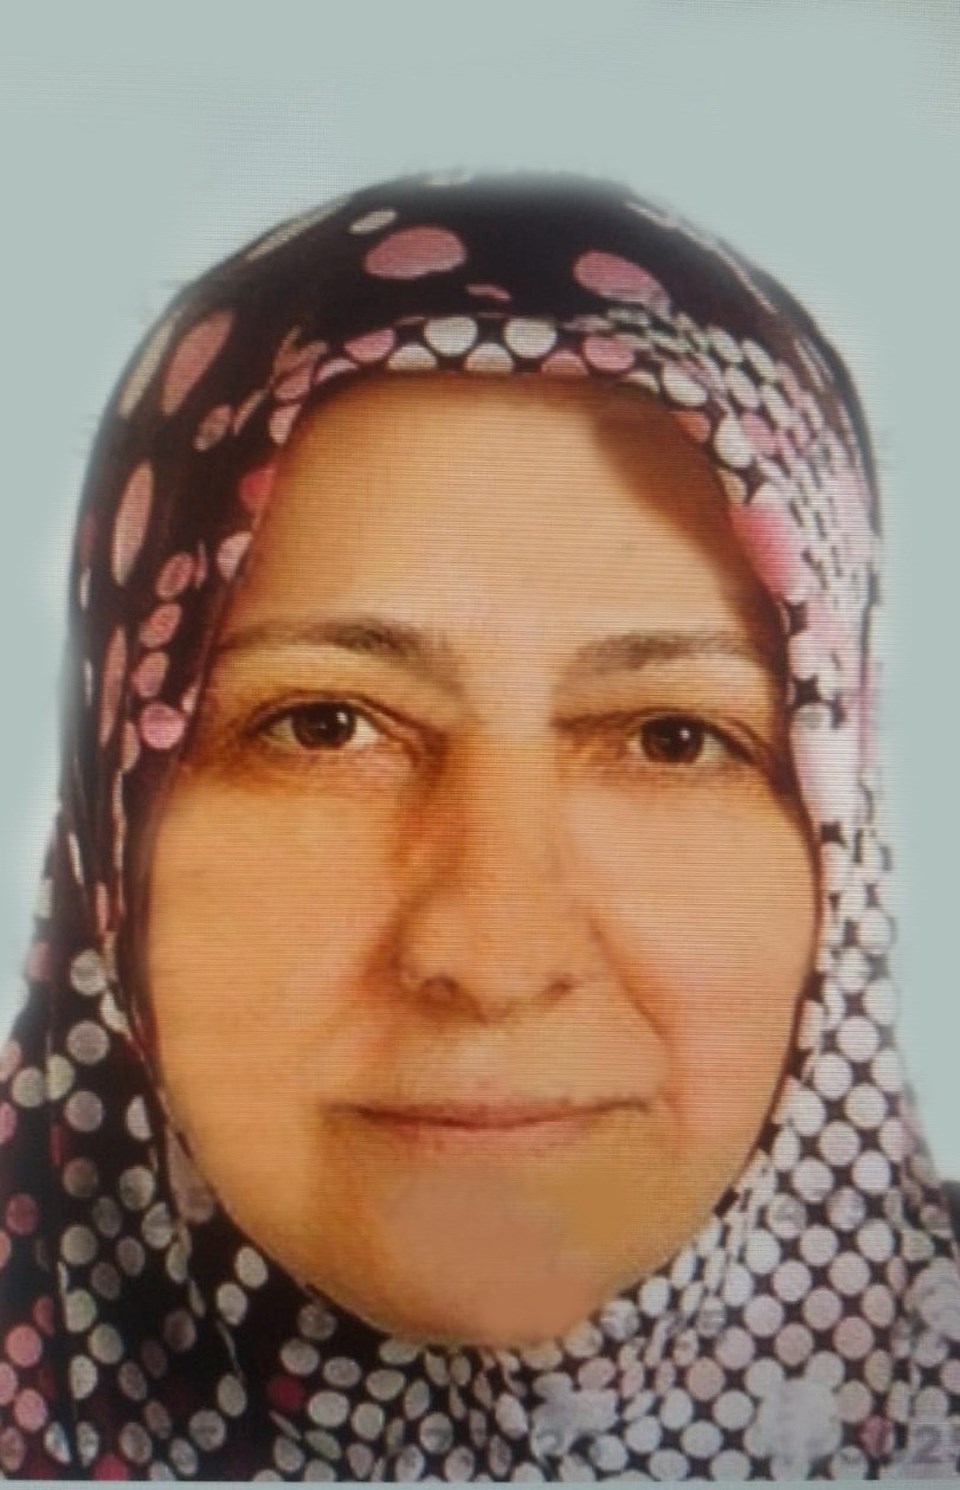 İstanbul'da dehşet: Annesini ve kız kardeşini öldürüp camide intihar etti - 3